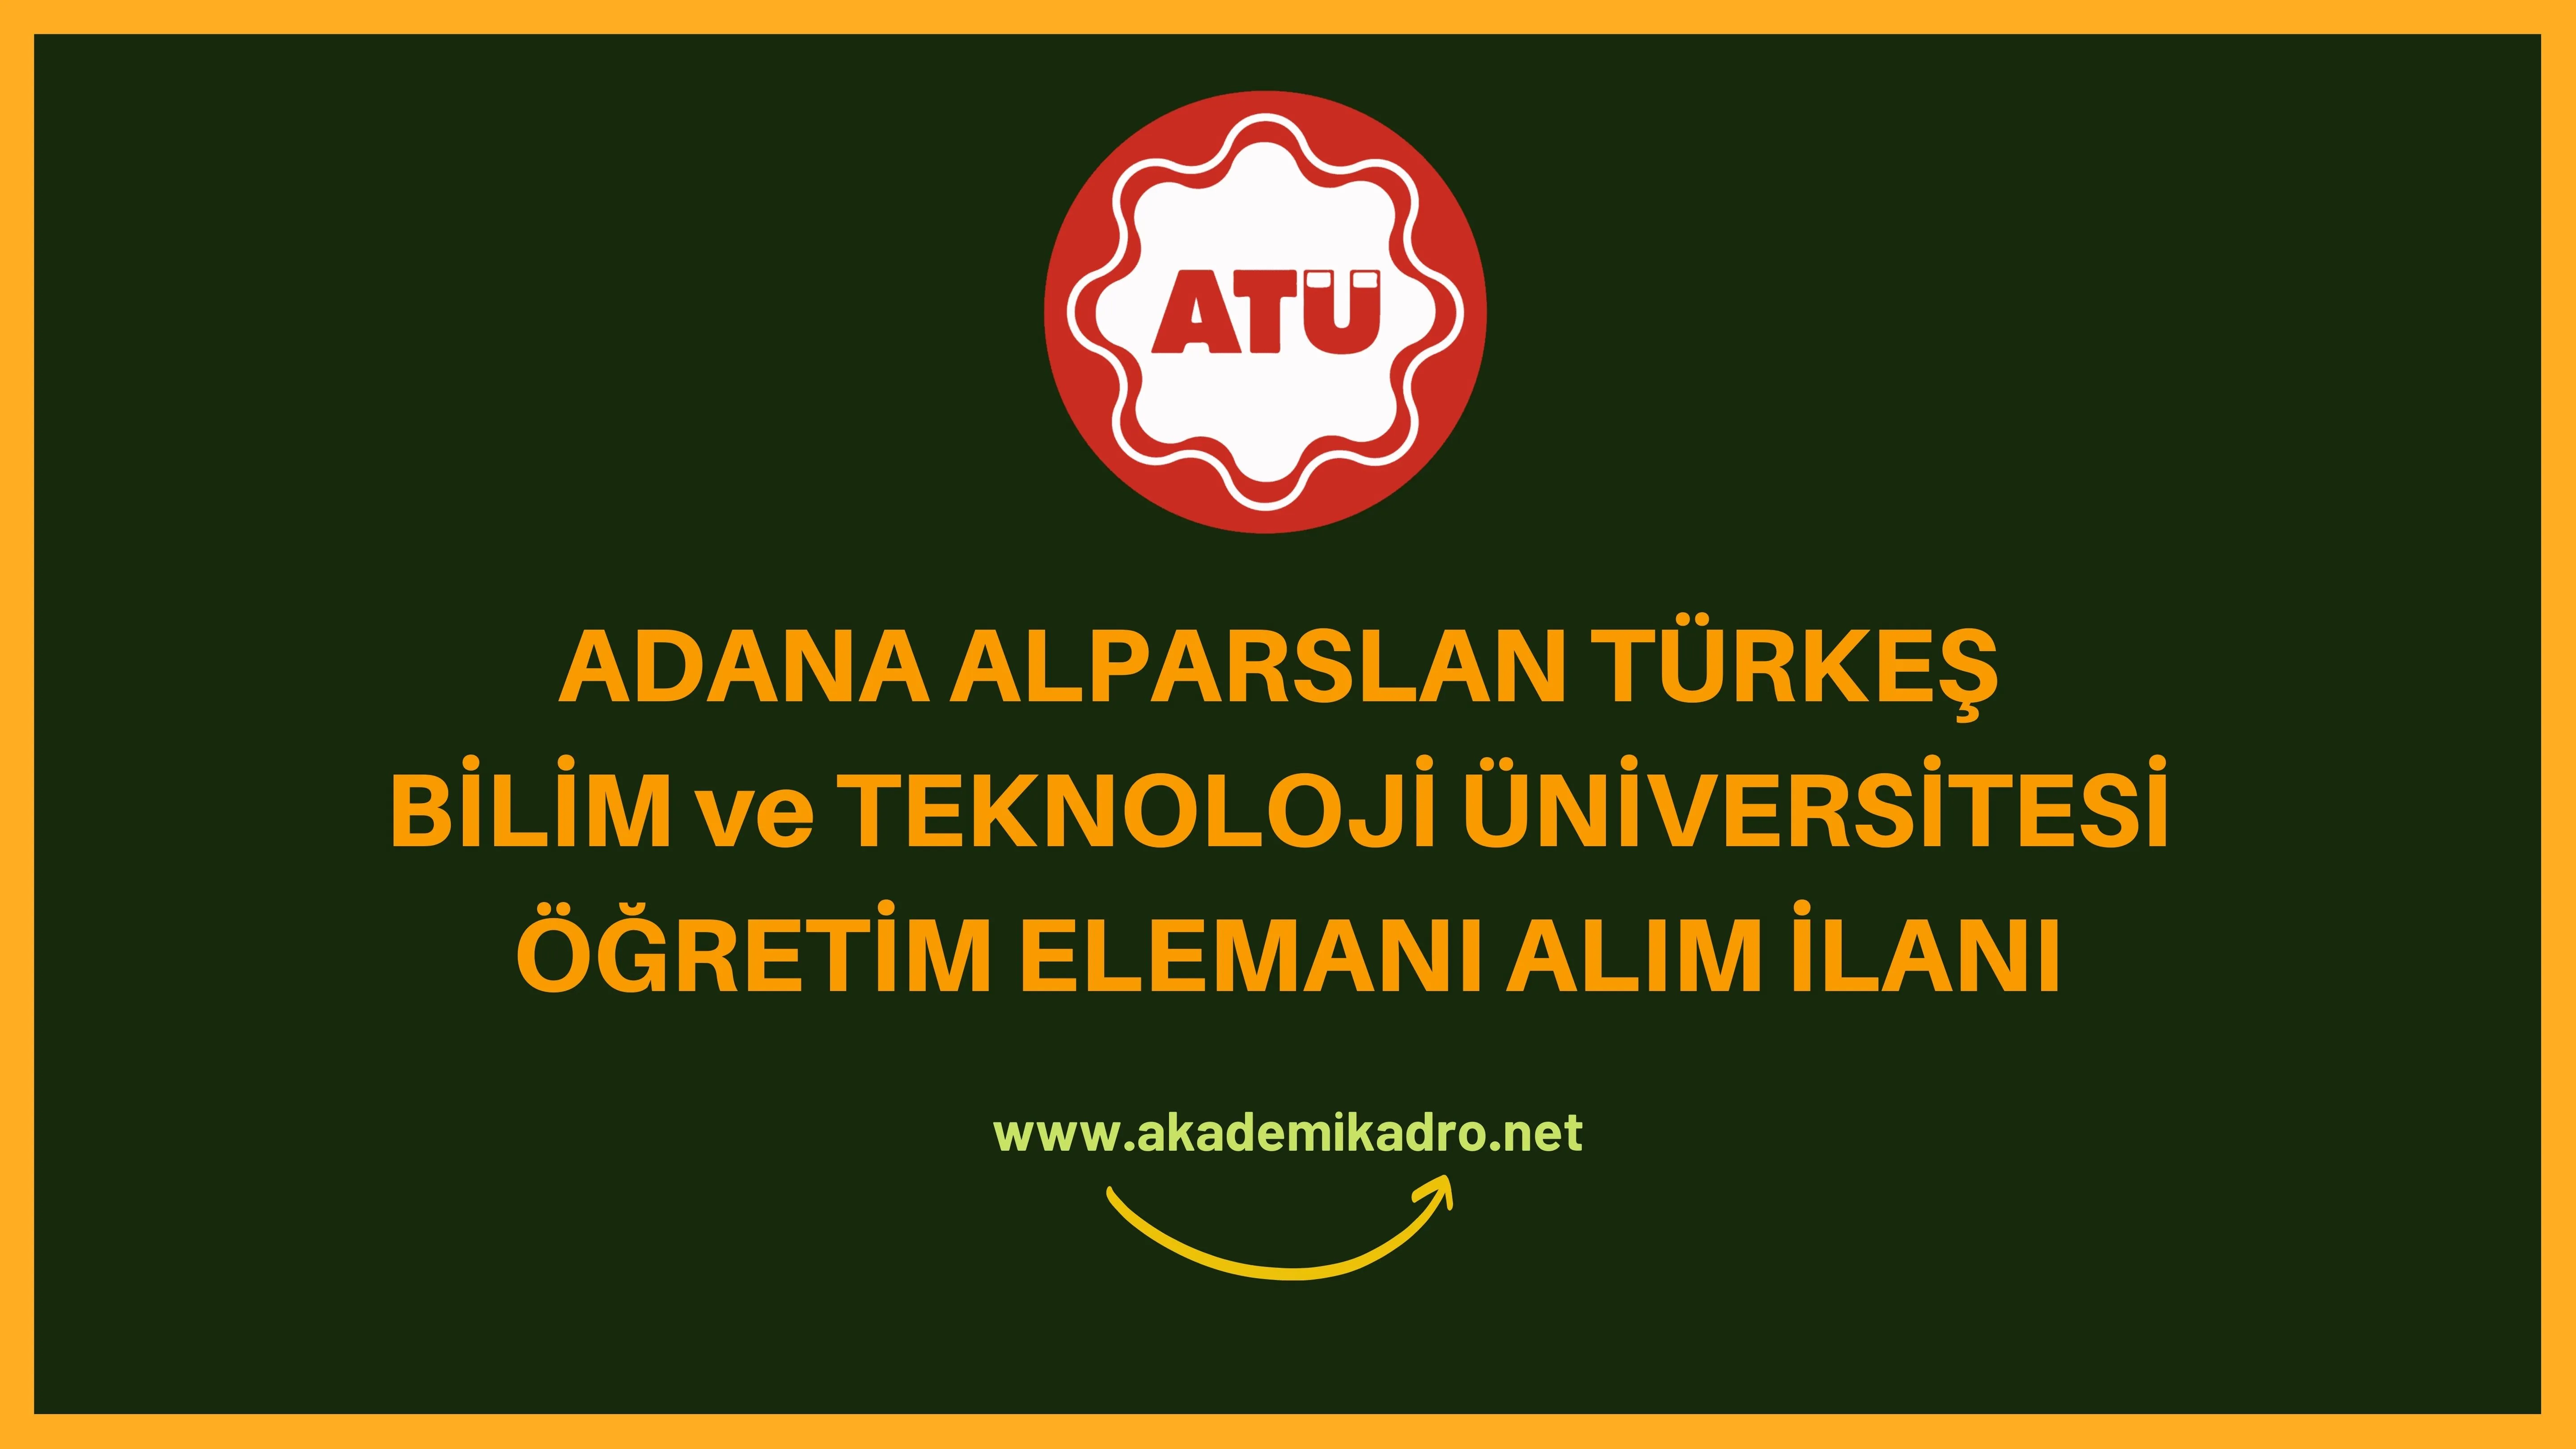 Adana Alparslan Türkeş Bilim ve Teknoloji Üniversitesi 3 Öğretim görevlisi ve birçok alandan 13 Öğretim üyesi alacak.